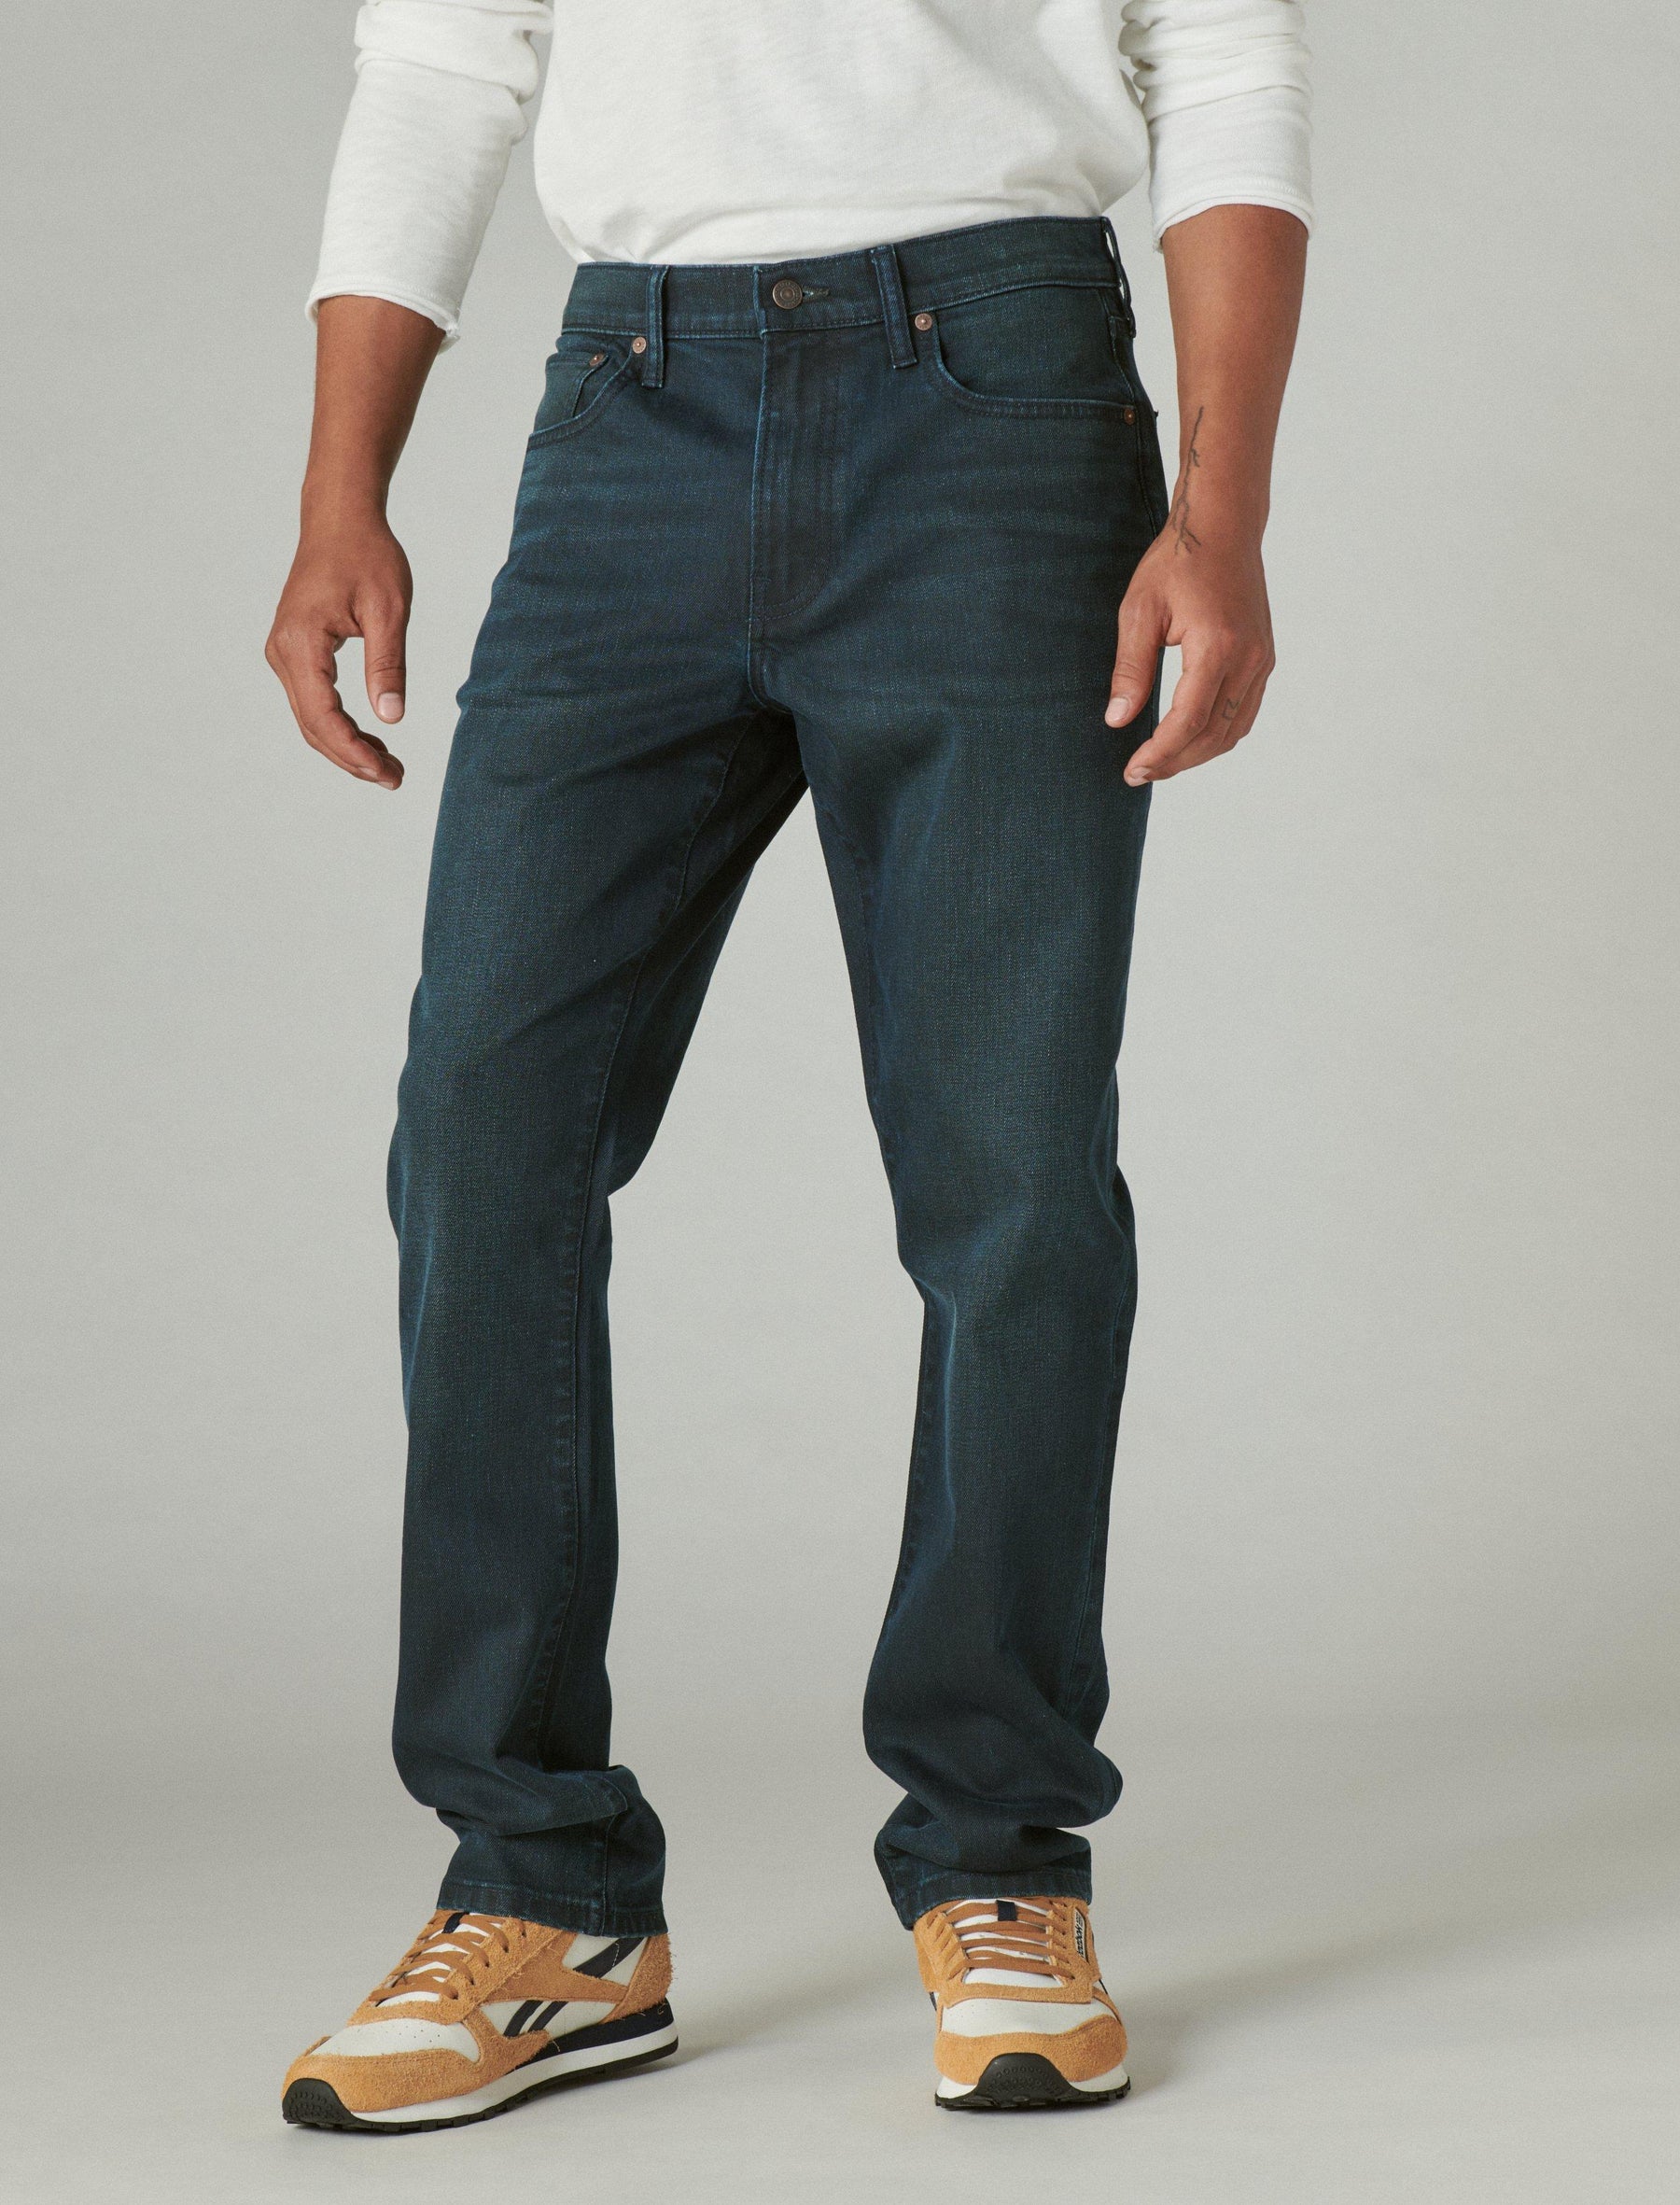 Lucky Brand 223 Straight Guinness Jean - Men's Pants Denim Straight Leg Jeans Porter